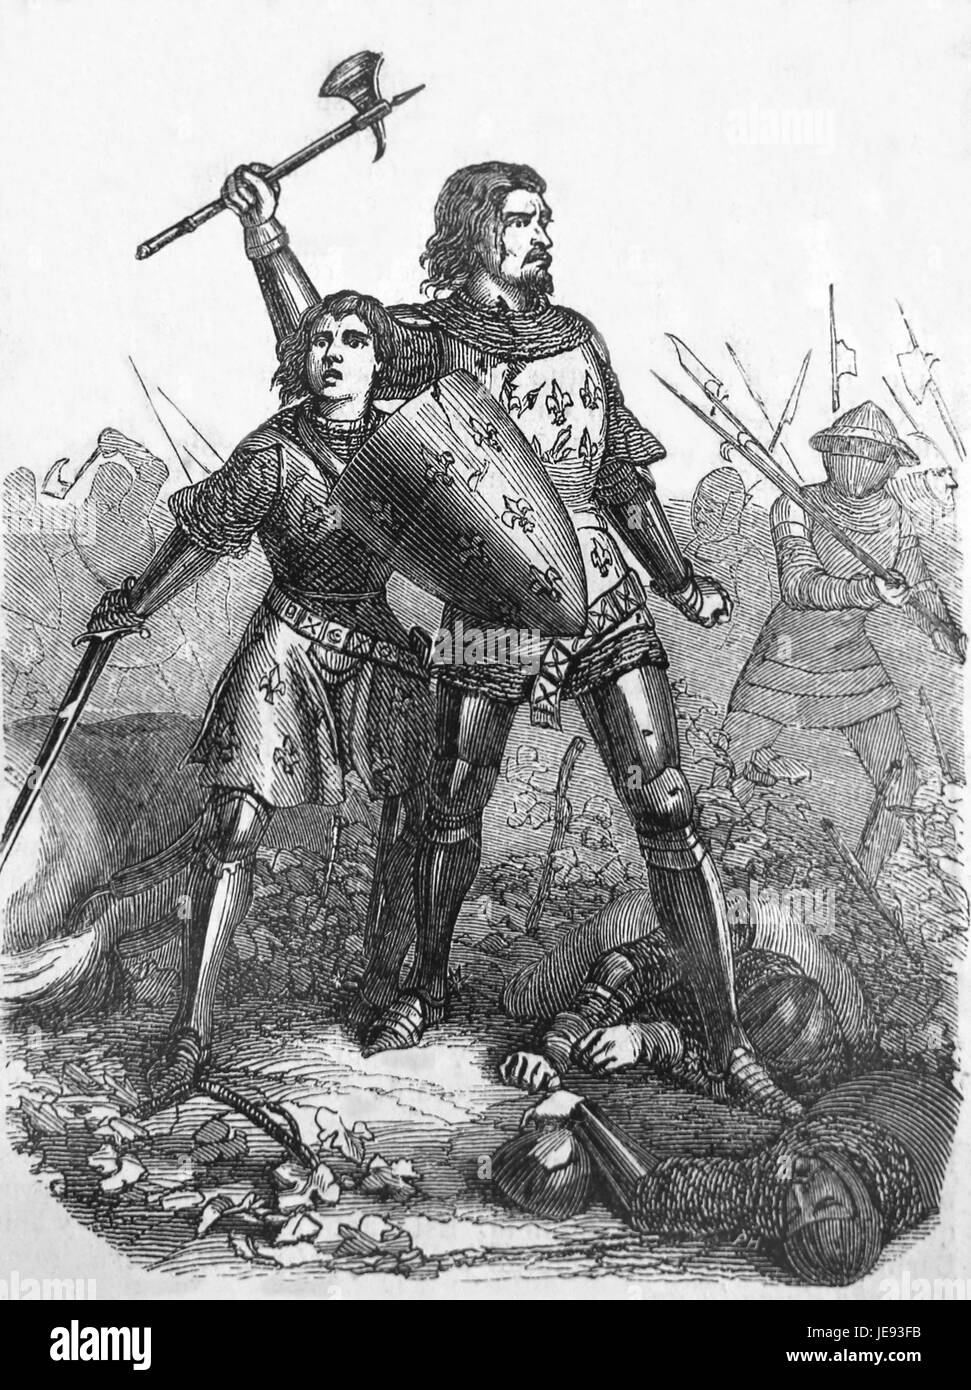 Giovanni II di Francia (1319-1364) 14th. Secolo e suo figlio Filippo II, duca di Burguyndy catturato nella battaglia di Poitiers (1356). Foto Stock